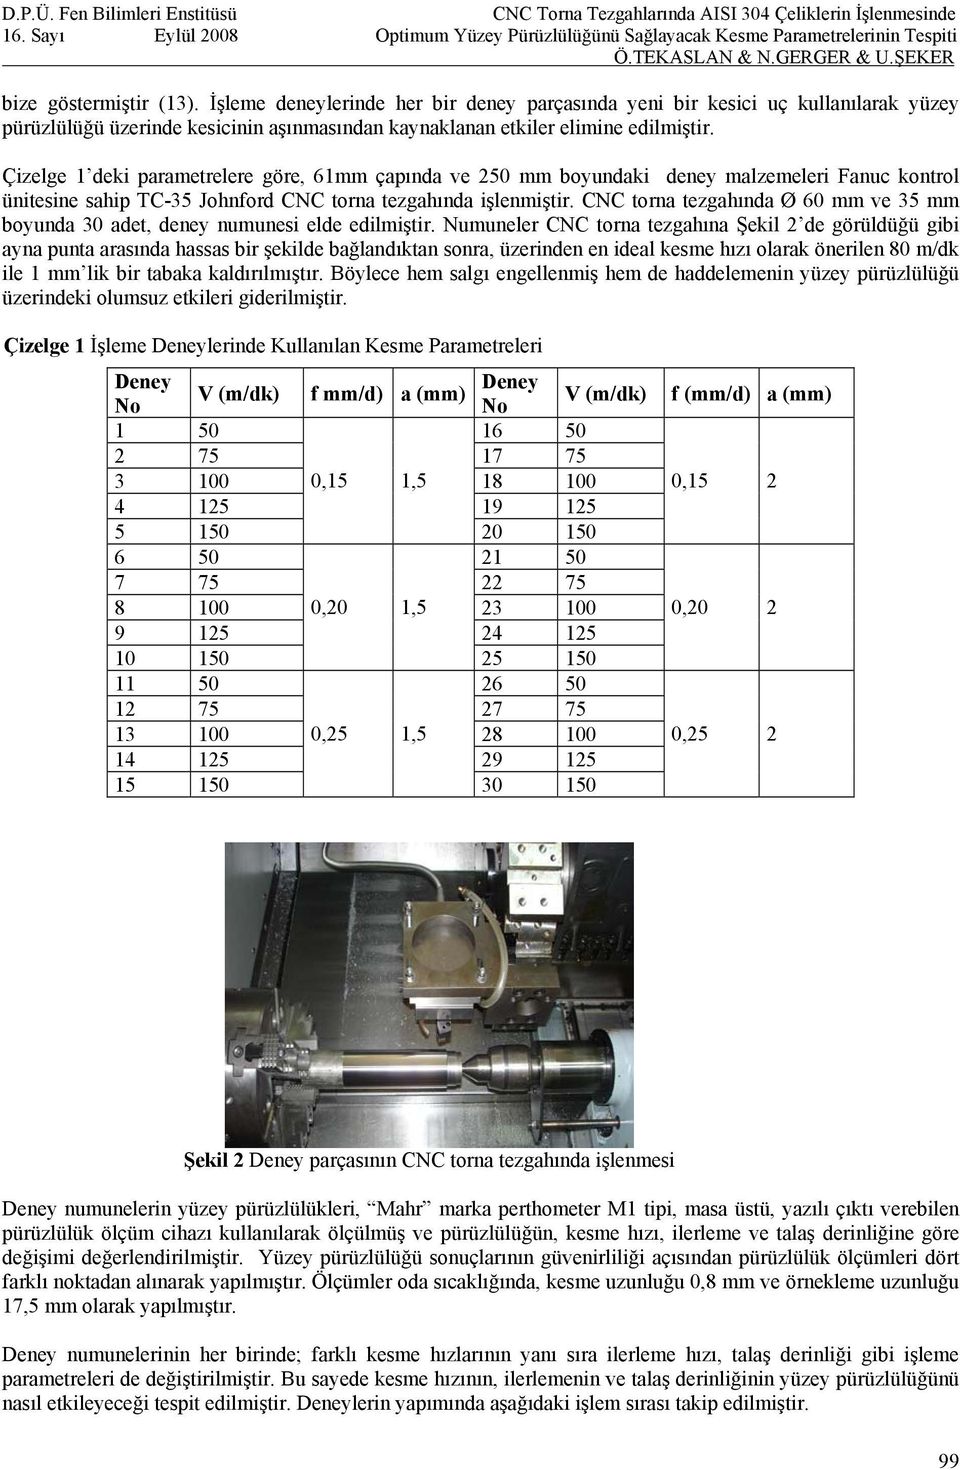 CNC torna tezgahında Ø 60 mm ve 35 mm boyunda 30 adet, deney numunesi elde edilmiştir.